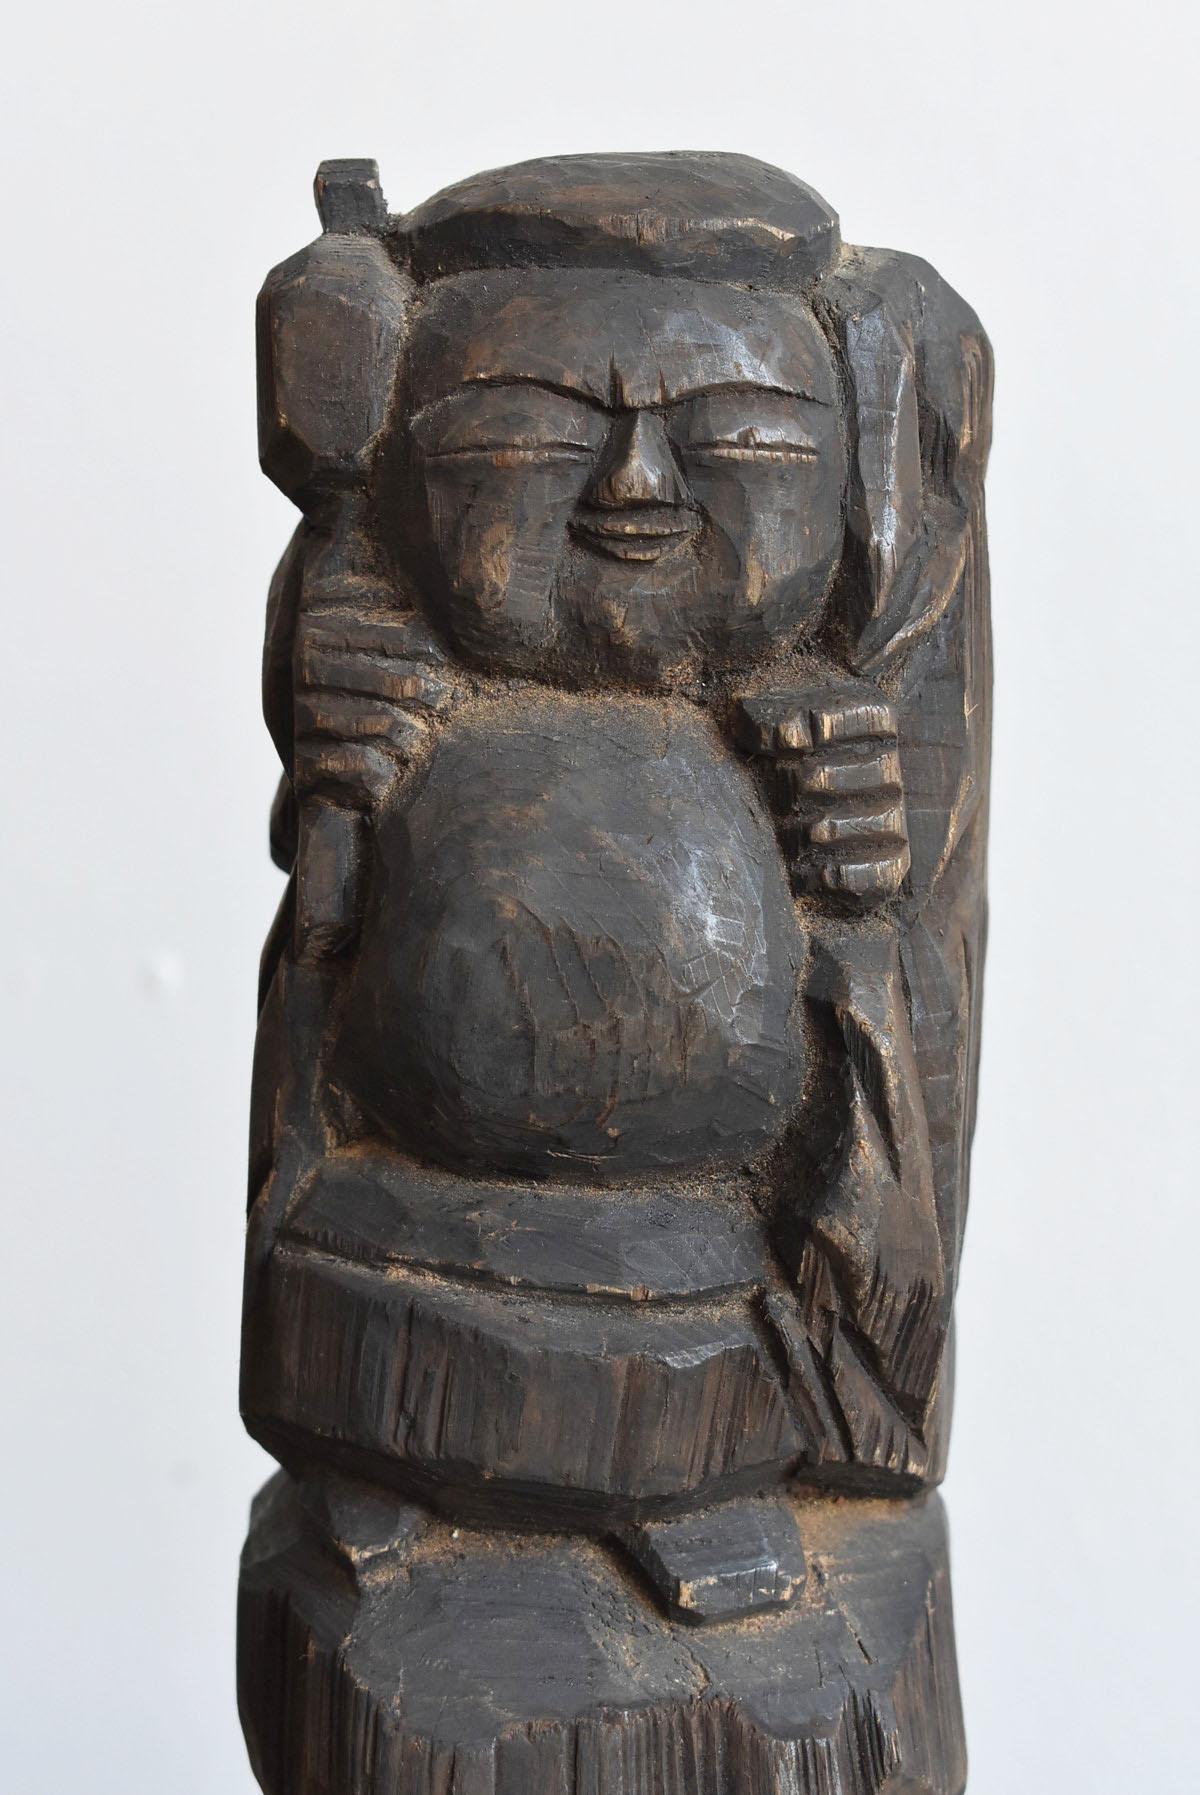 daikokuten statue